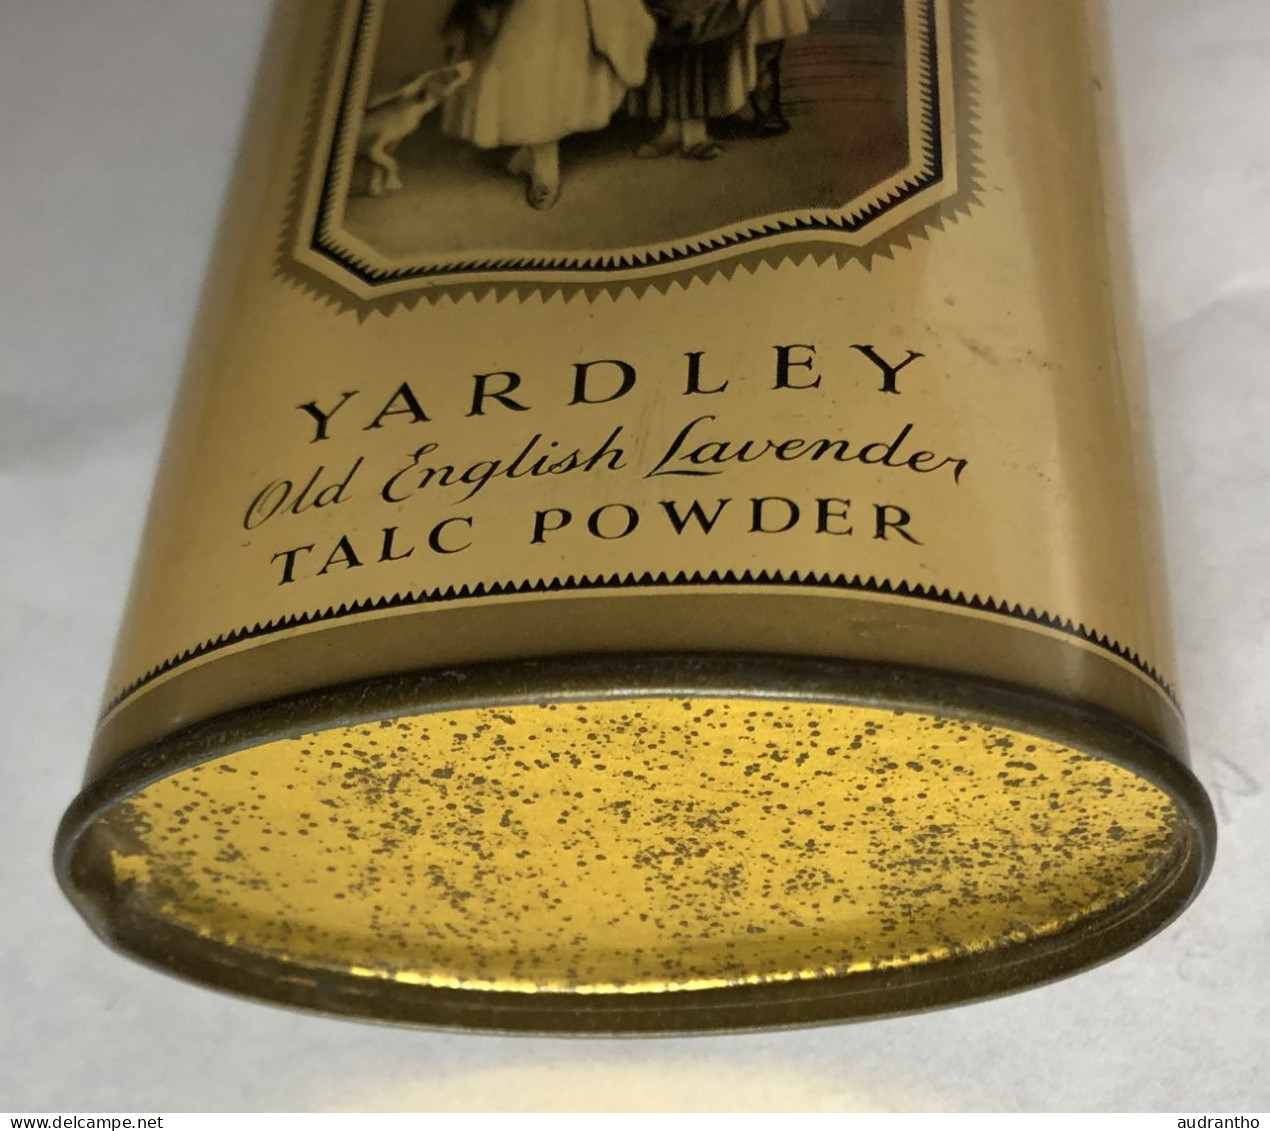 Ancienne Boîte Anglaise De Poudre De Talc - Yardley Old English Lavender - Talc Powder - Accessoires